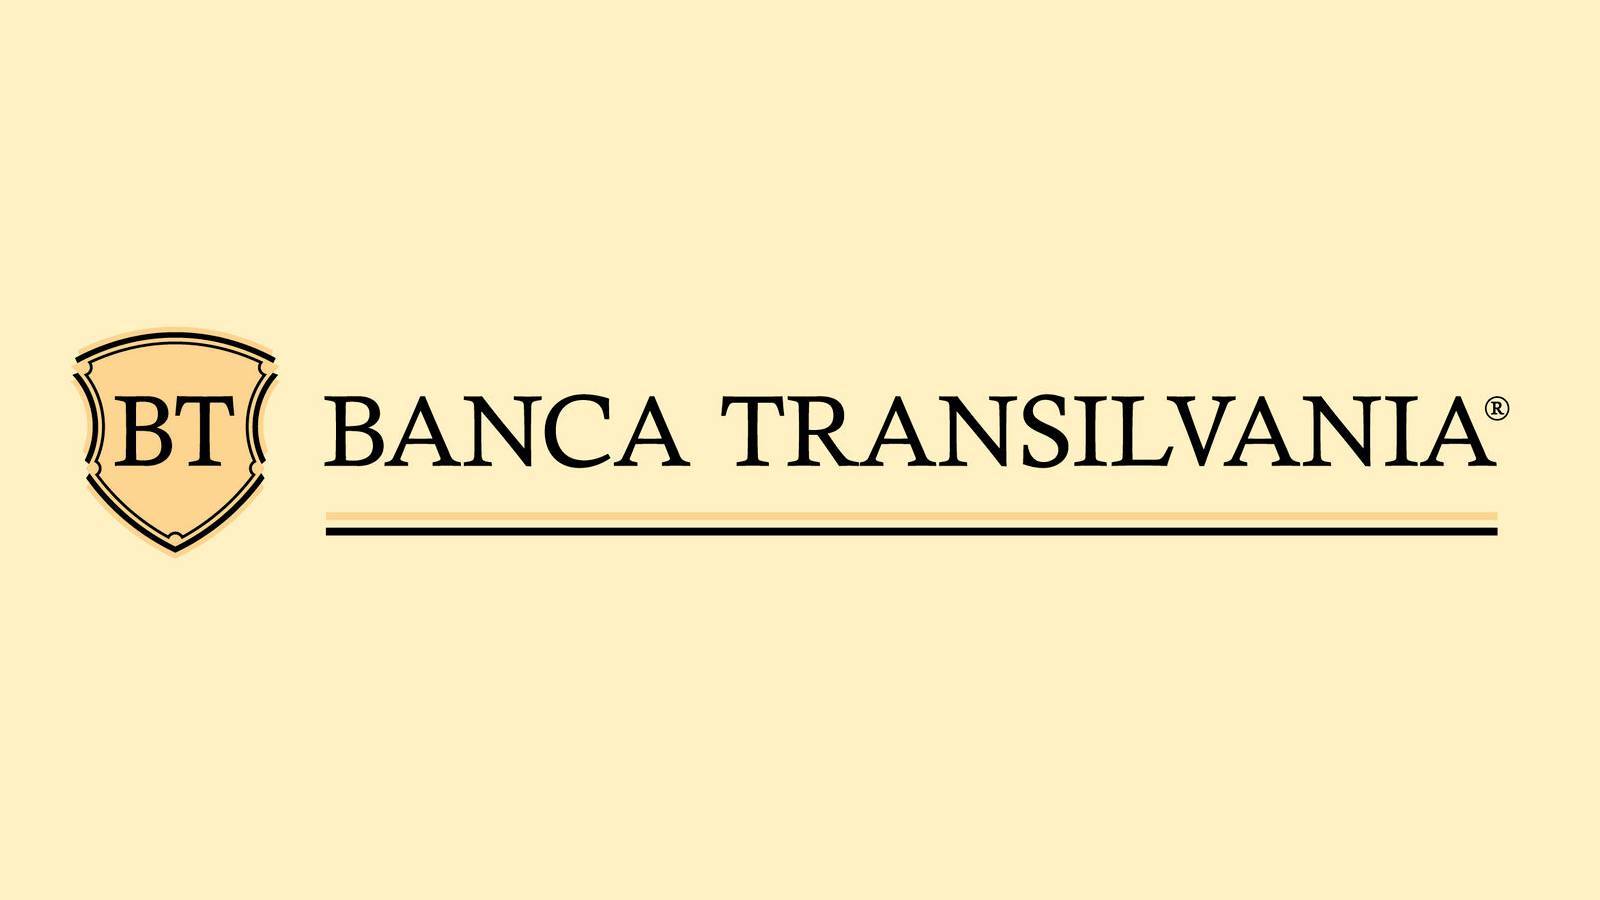 BANCA Transilvania VIKTIG information utfärdad till kunder som du måste känna till idag